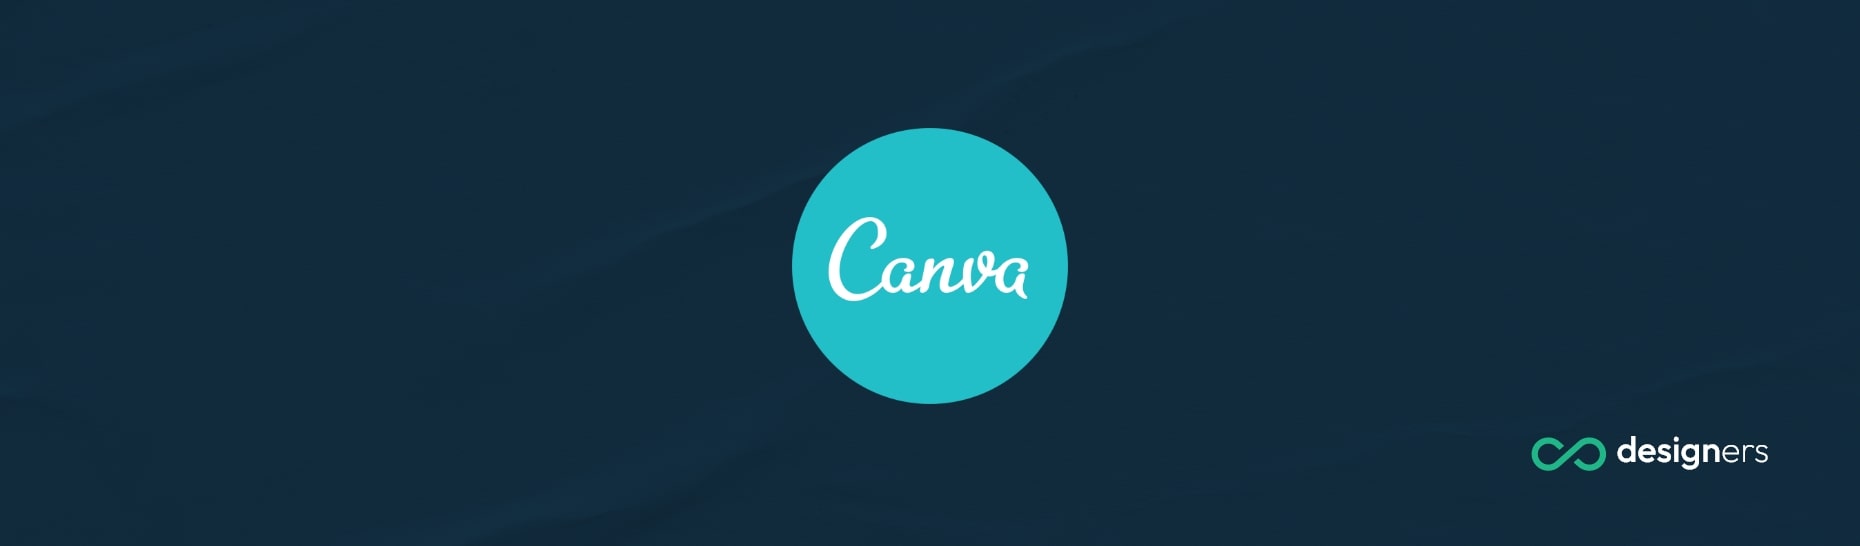 How Do You Add a Superscript in Canva?